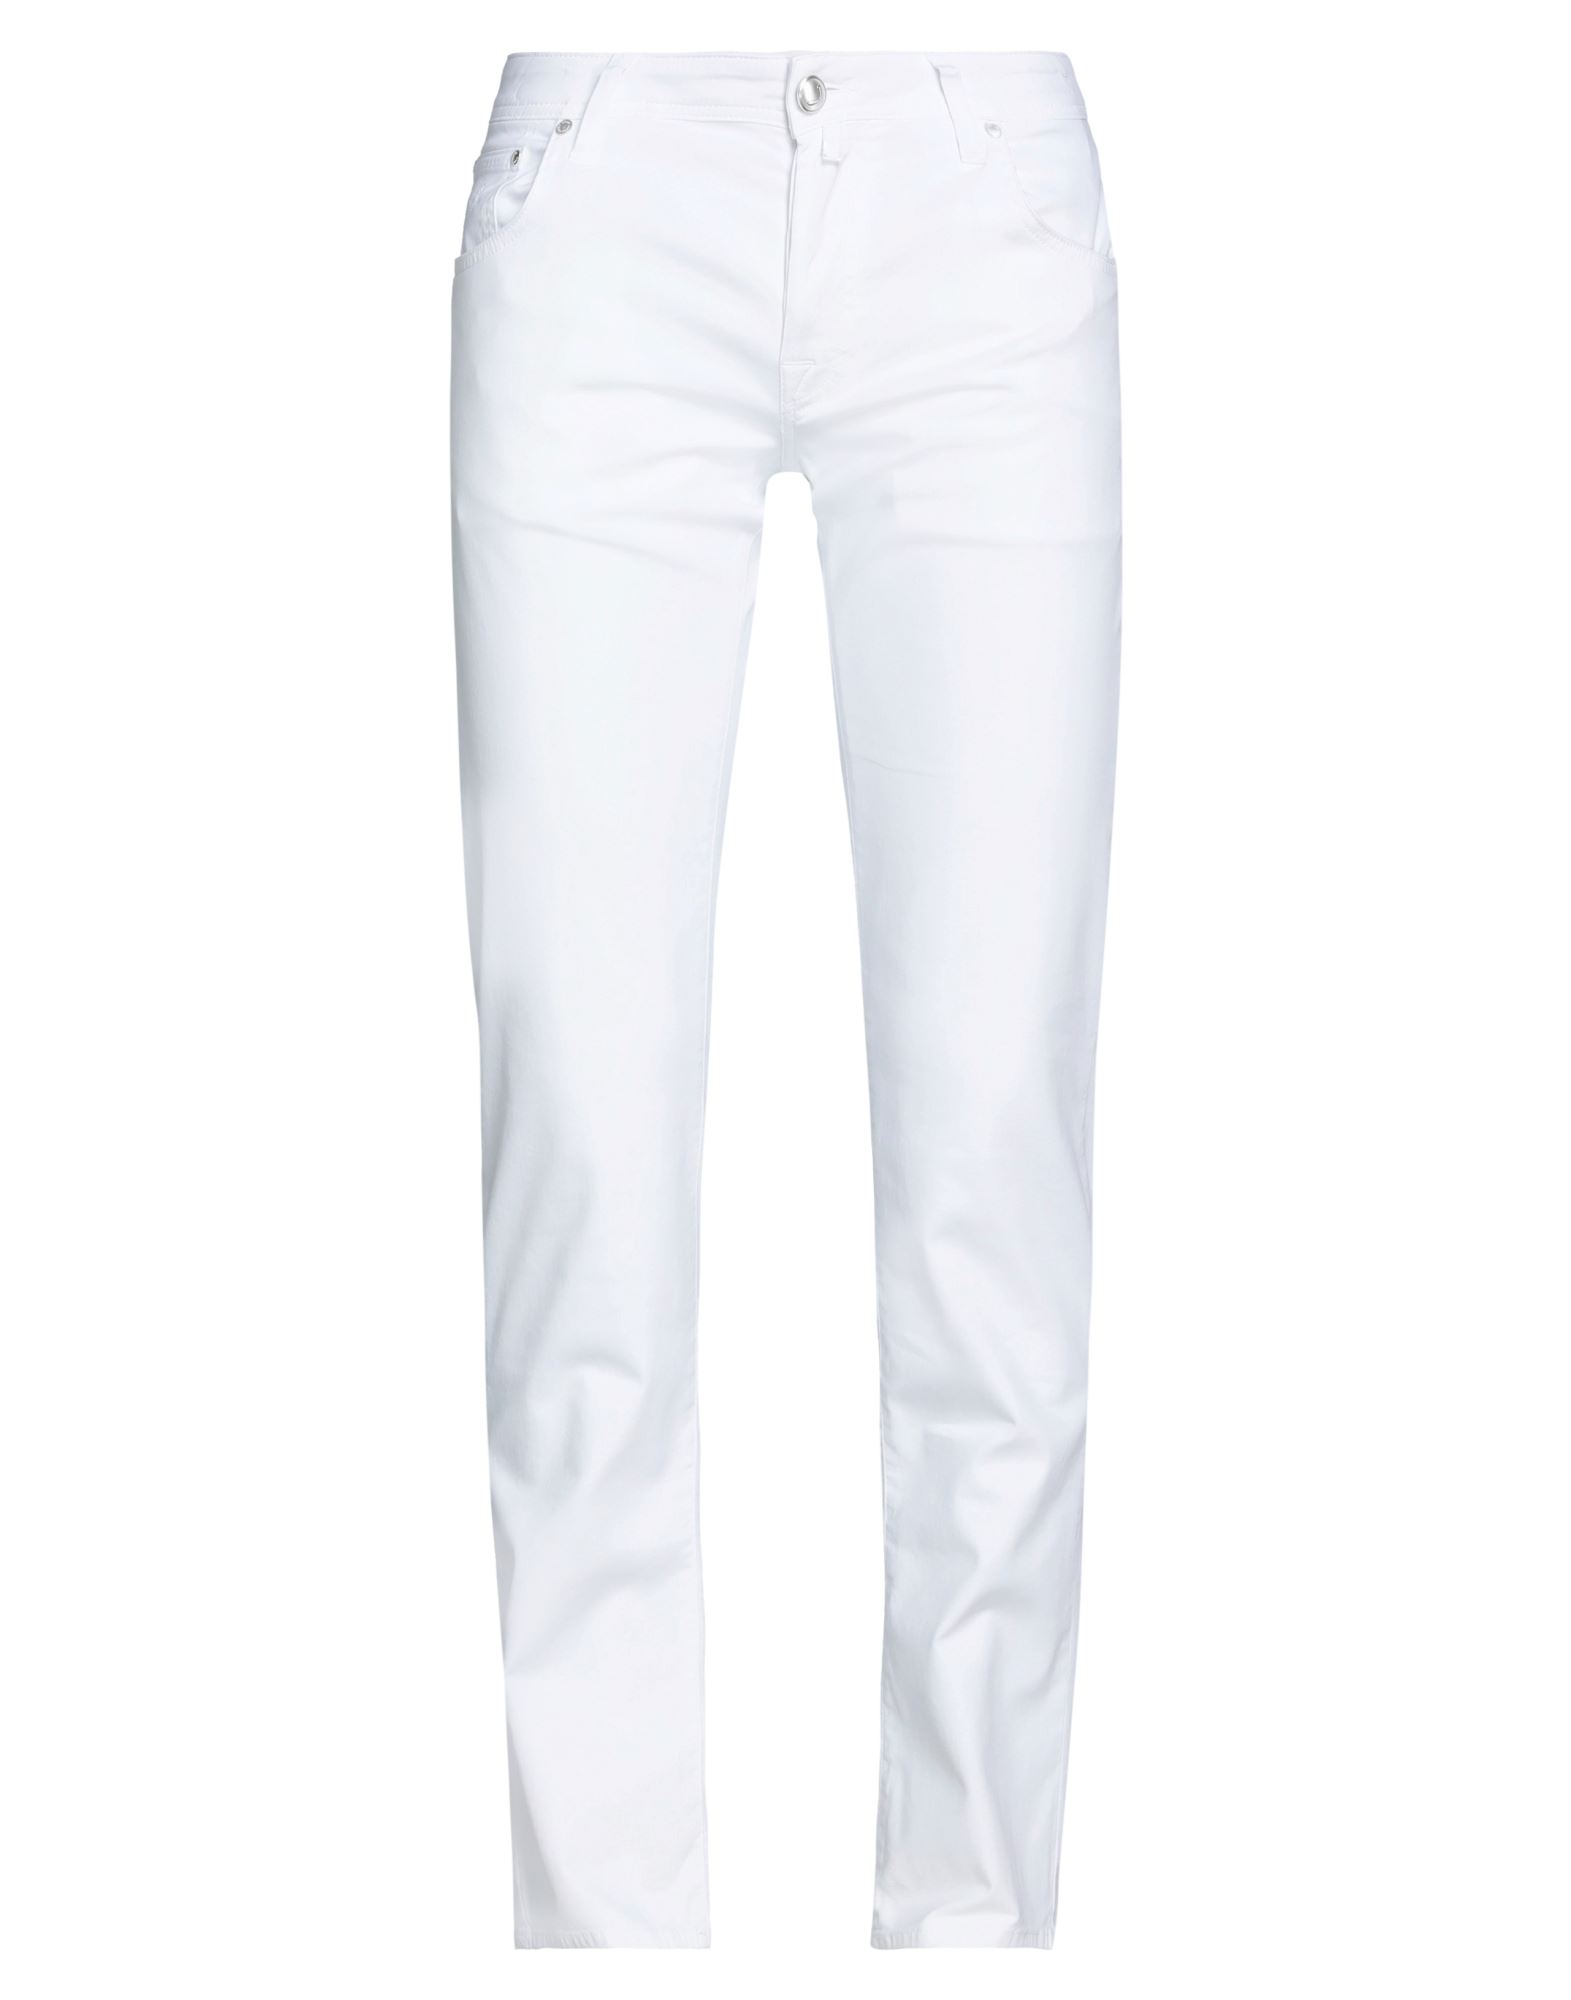 Jacob Cohёn Man Pants White Size 30 Cotton, Lyocell, Elastane